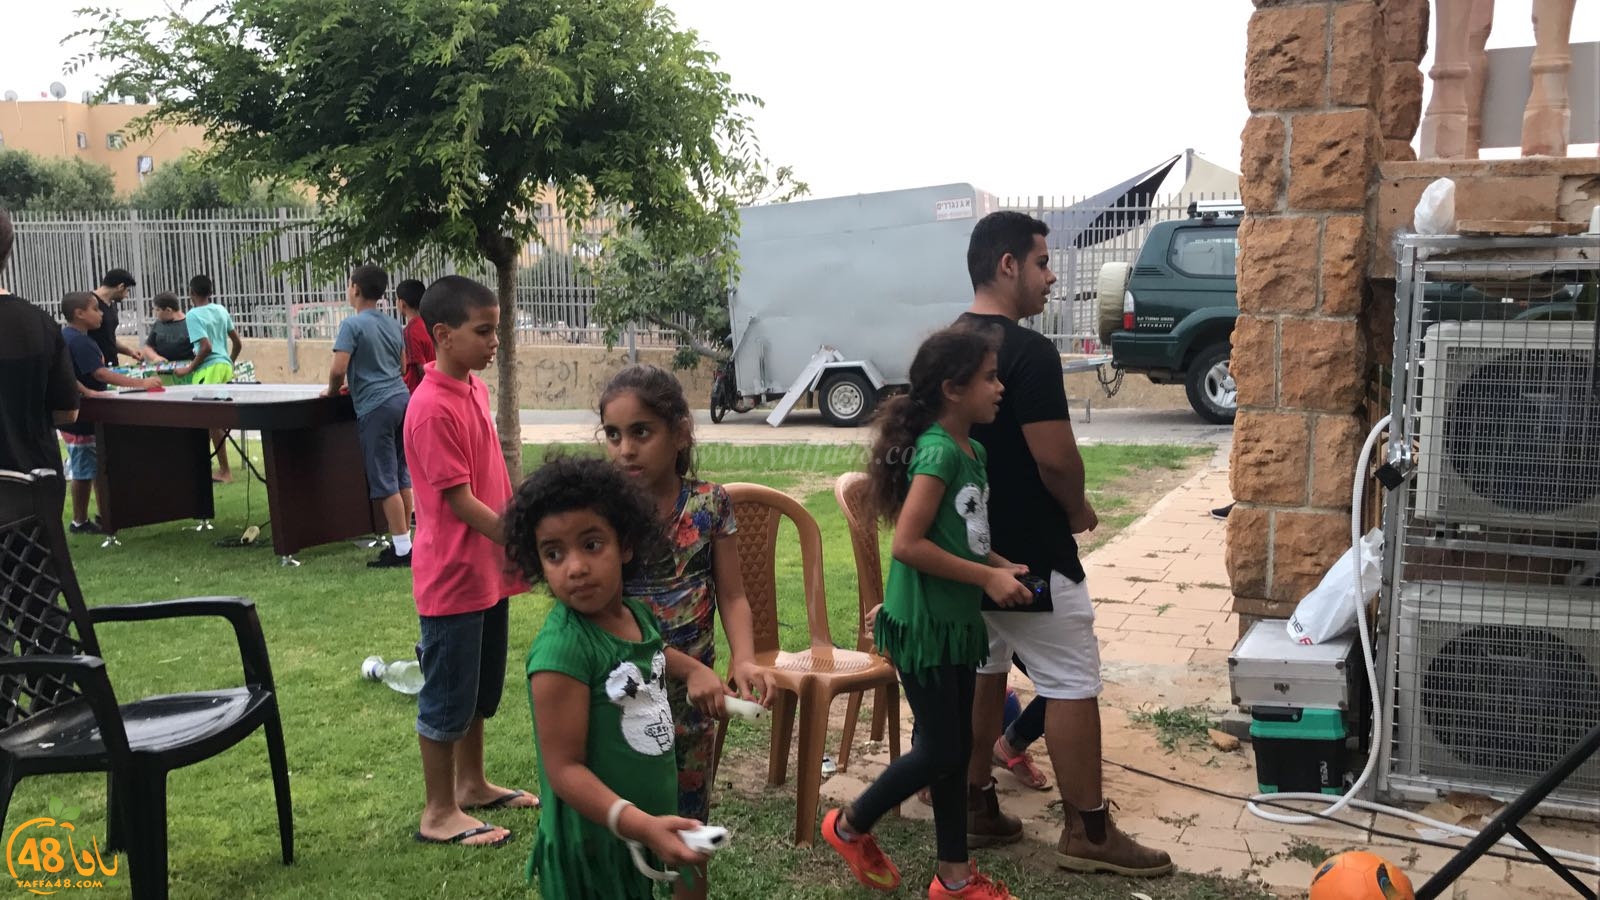  صور: فعاليات للأطفال والشبيبة في حي الجبلية بمدينة يافا 